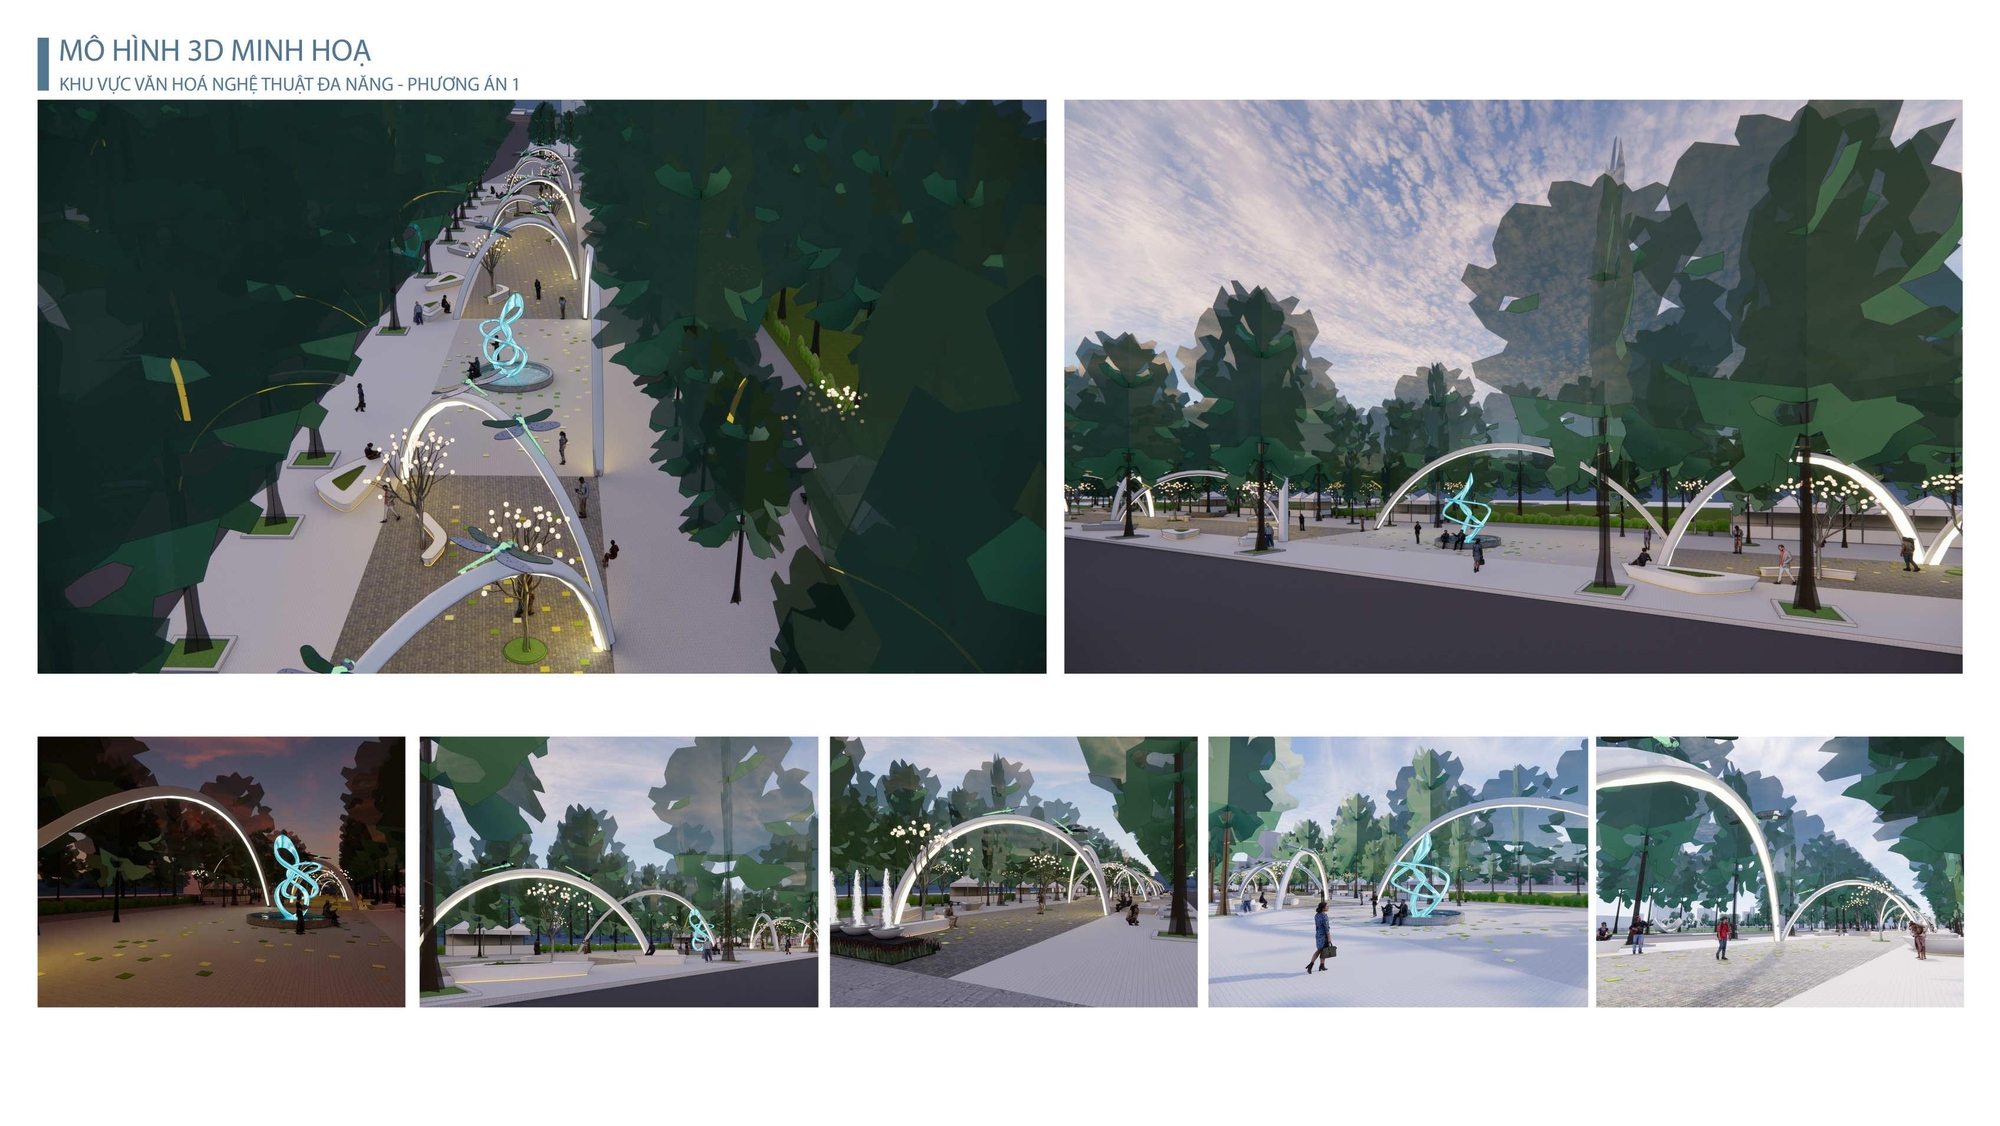 Ngắm diện mạo 5 quảng trường đang được đề xuất xây dựng quanh hồ Thiền Quang - Ảnh 7.